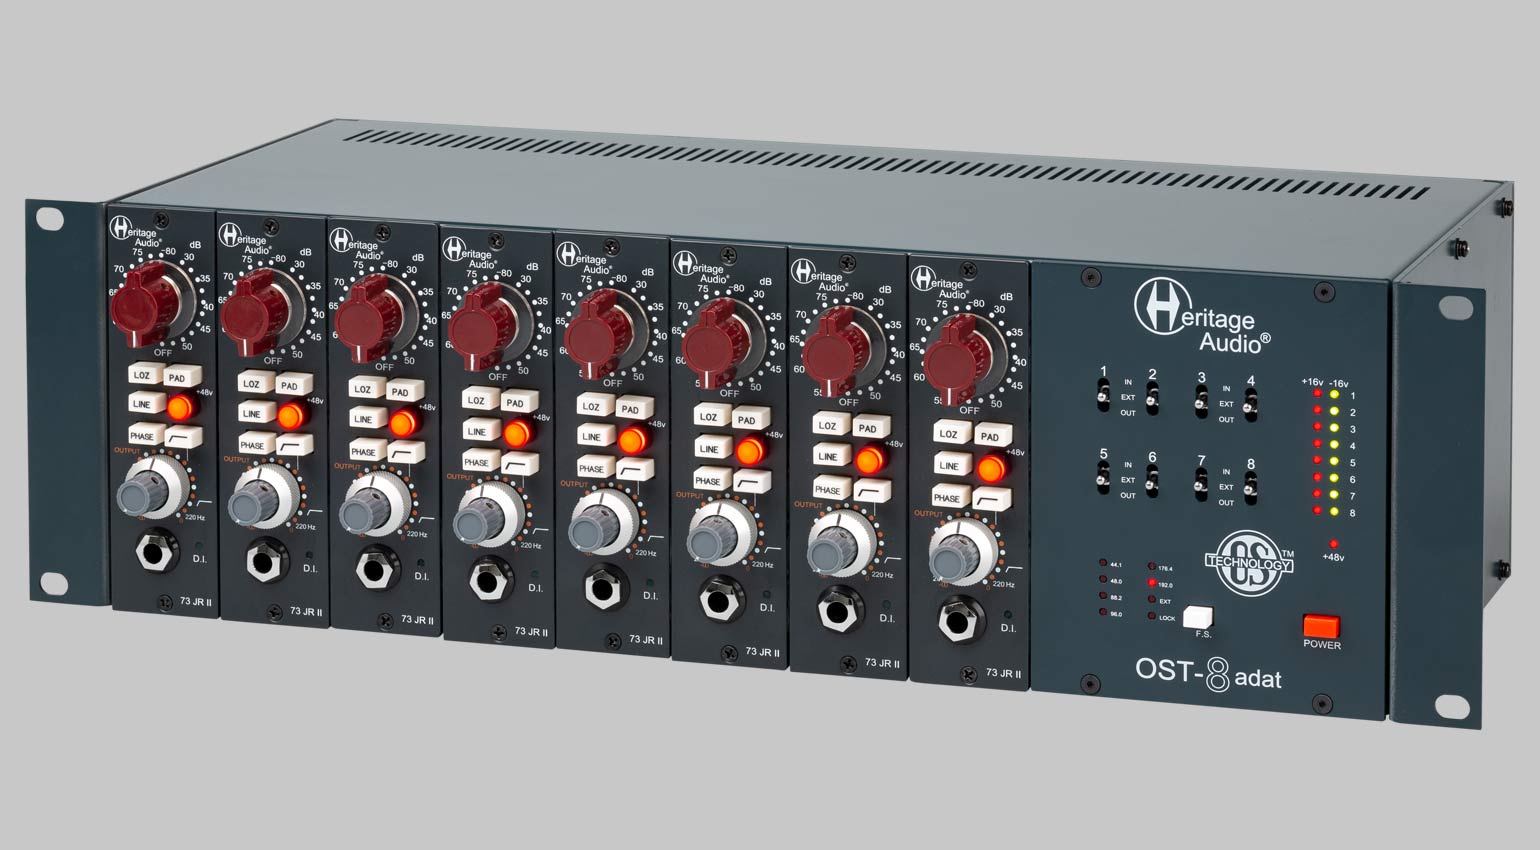 Heritage Audio OST-8 ADAT, schön gefüllt mit 500er Modulen